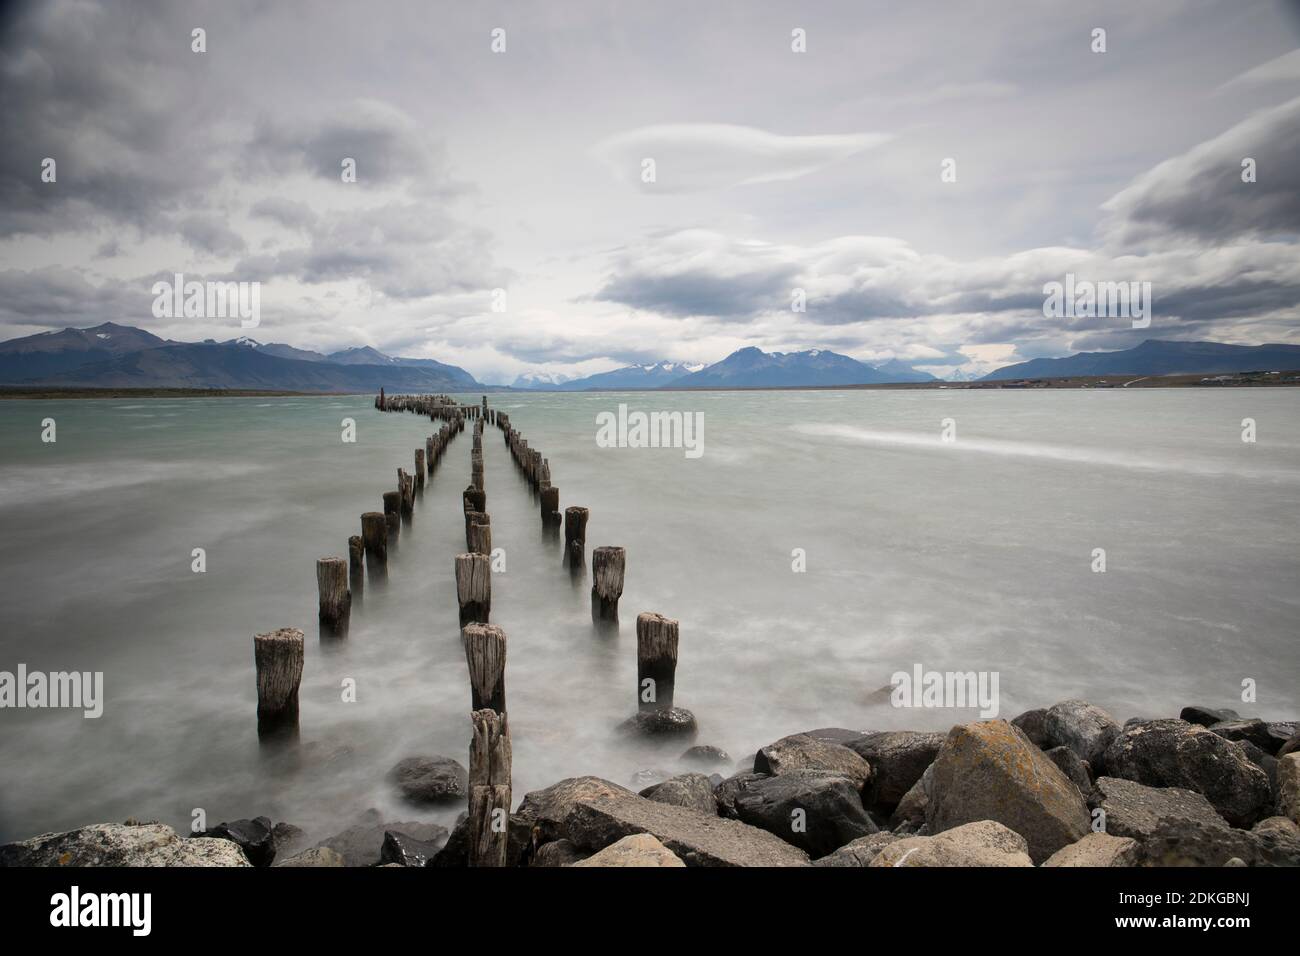 Foto a lungo termine con vista dalla riva della baia di ultima speranza a Puerto Natales, Cile, Sud America Foto Stock